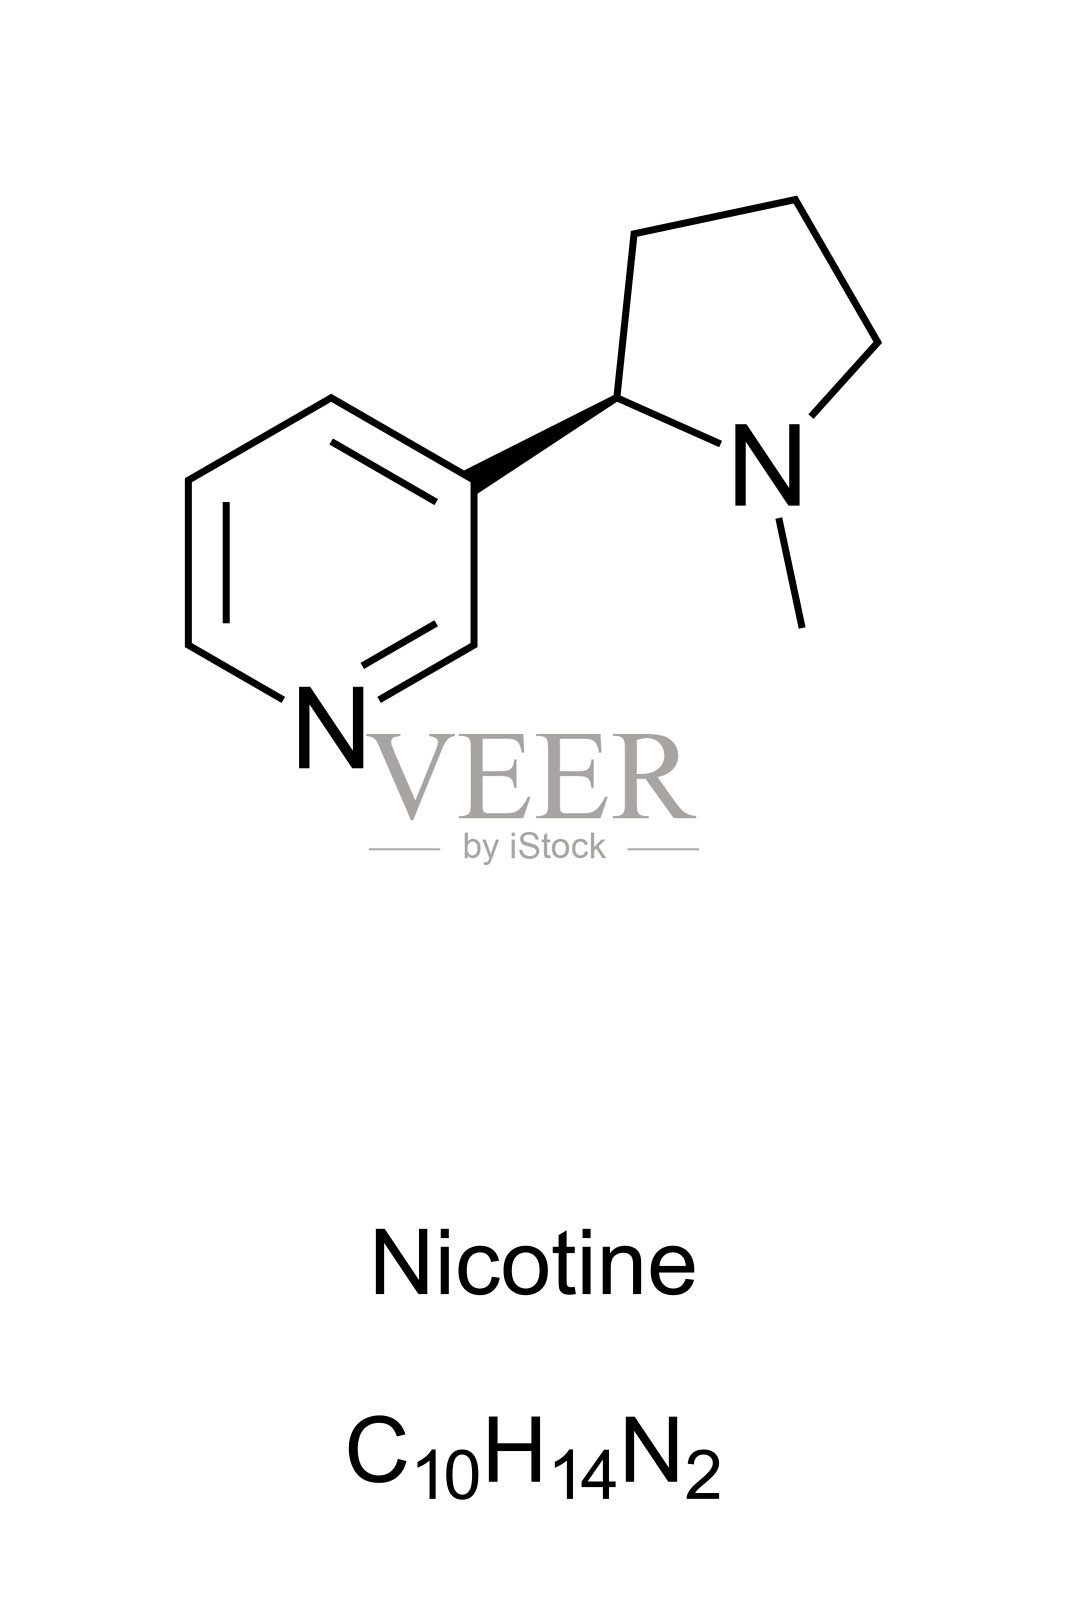 尼古丁分子骨架公式插画图片素材